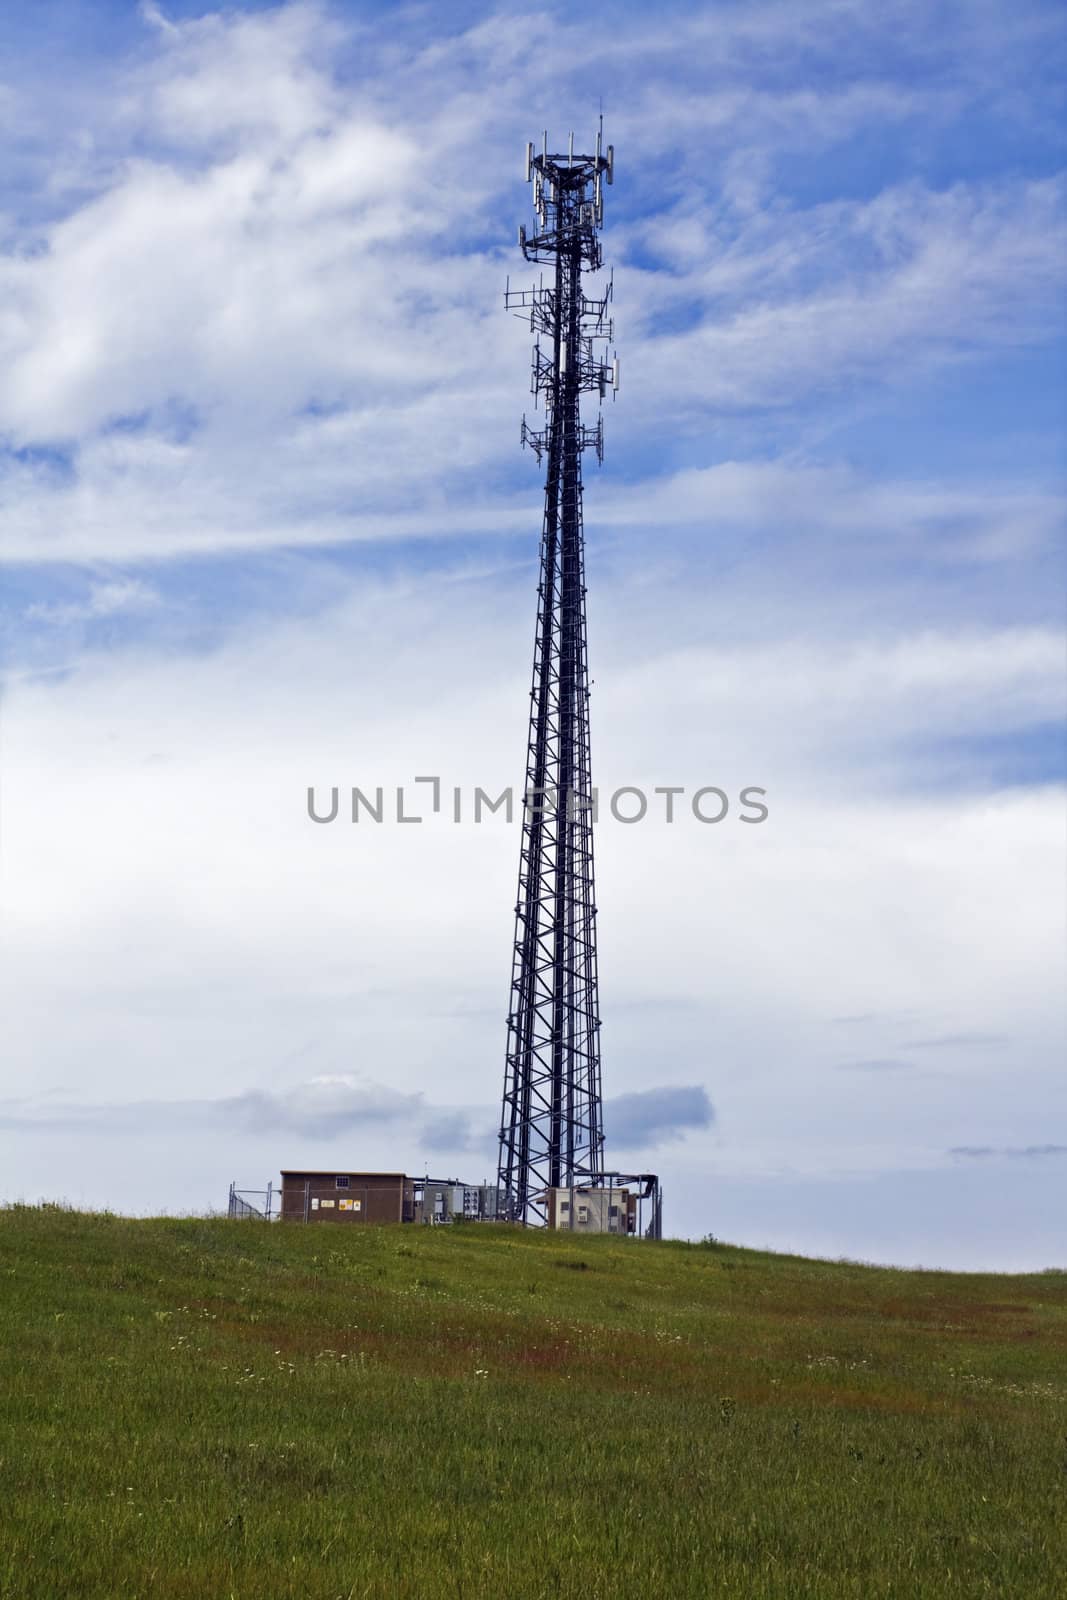 Coax Cabels climbing Lattice Tower